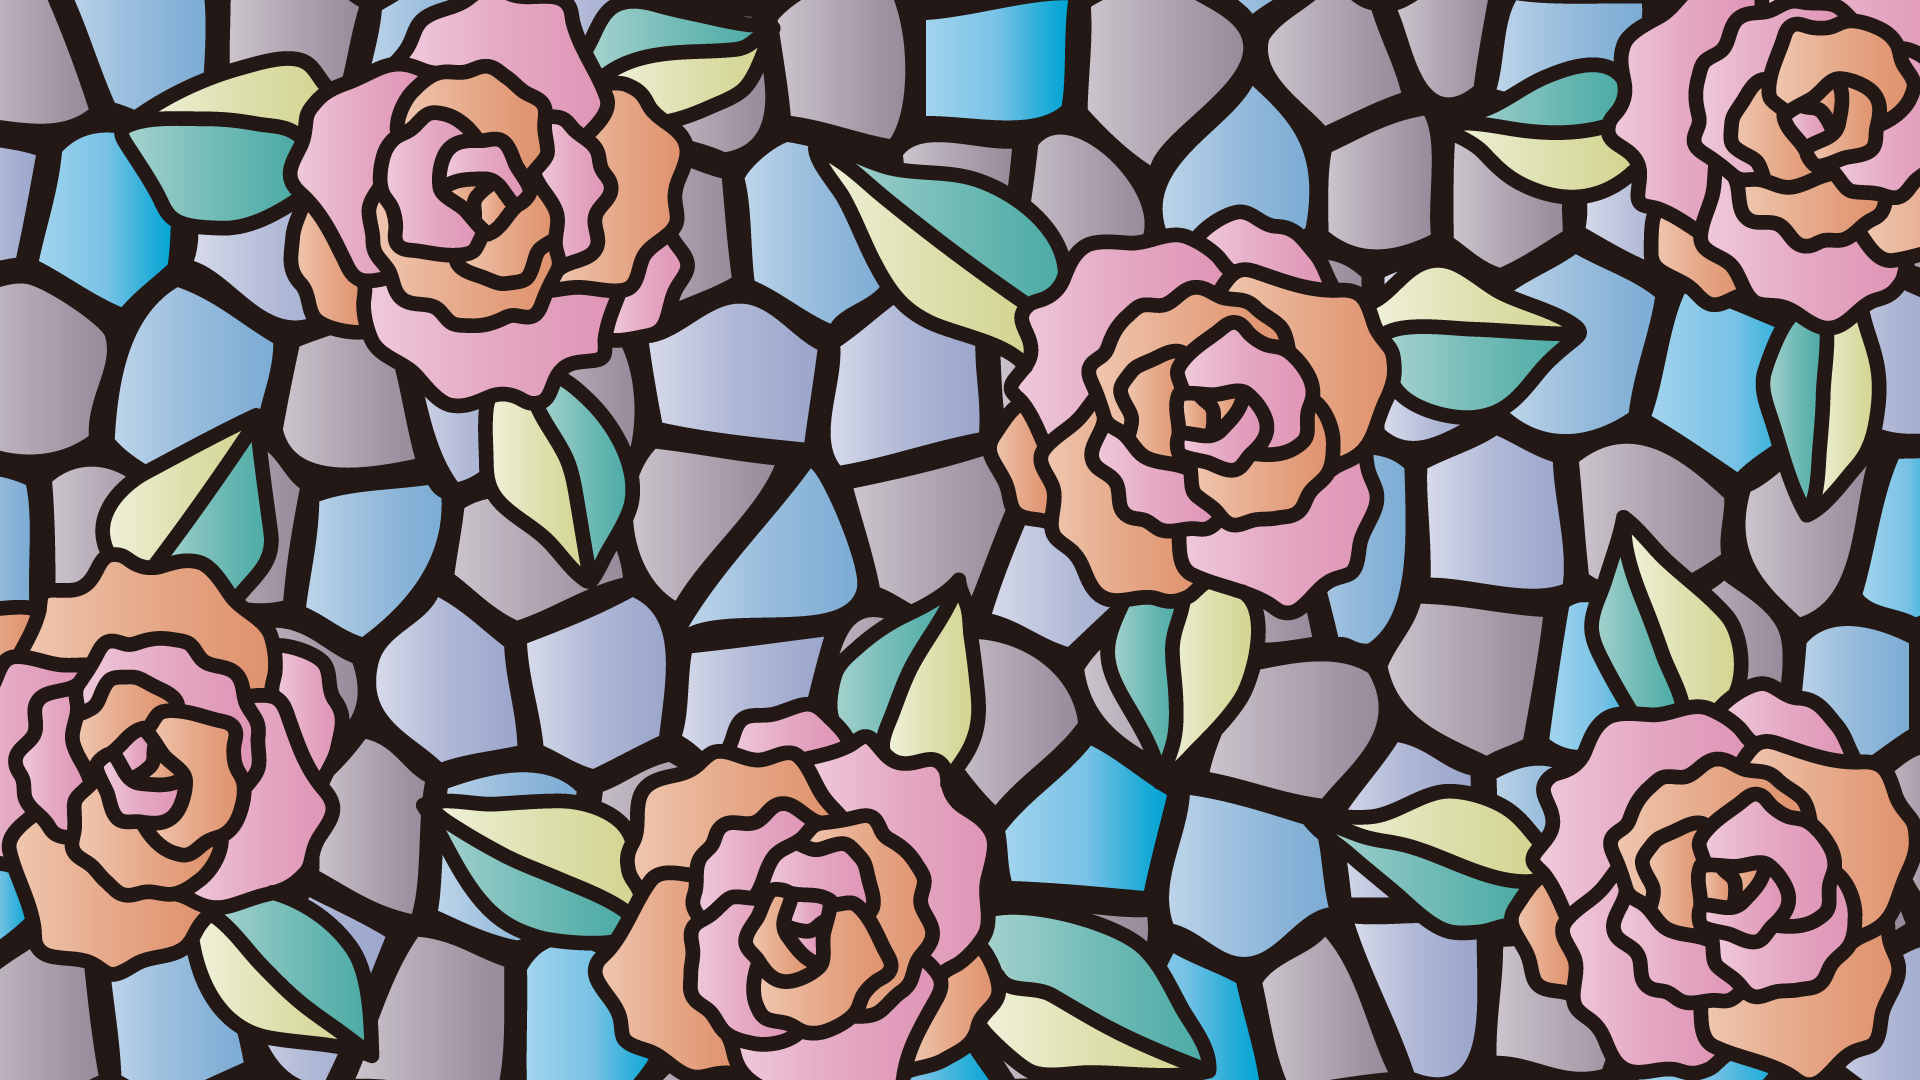 バラのステンドグラスの壁紙・背景素材 1,920px×1,080px